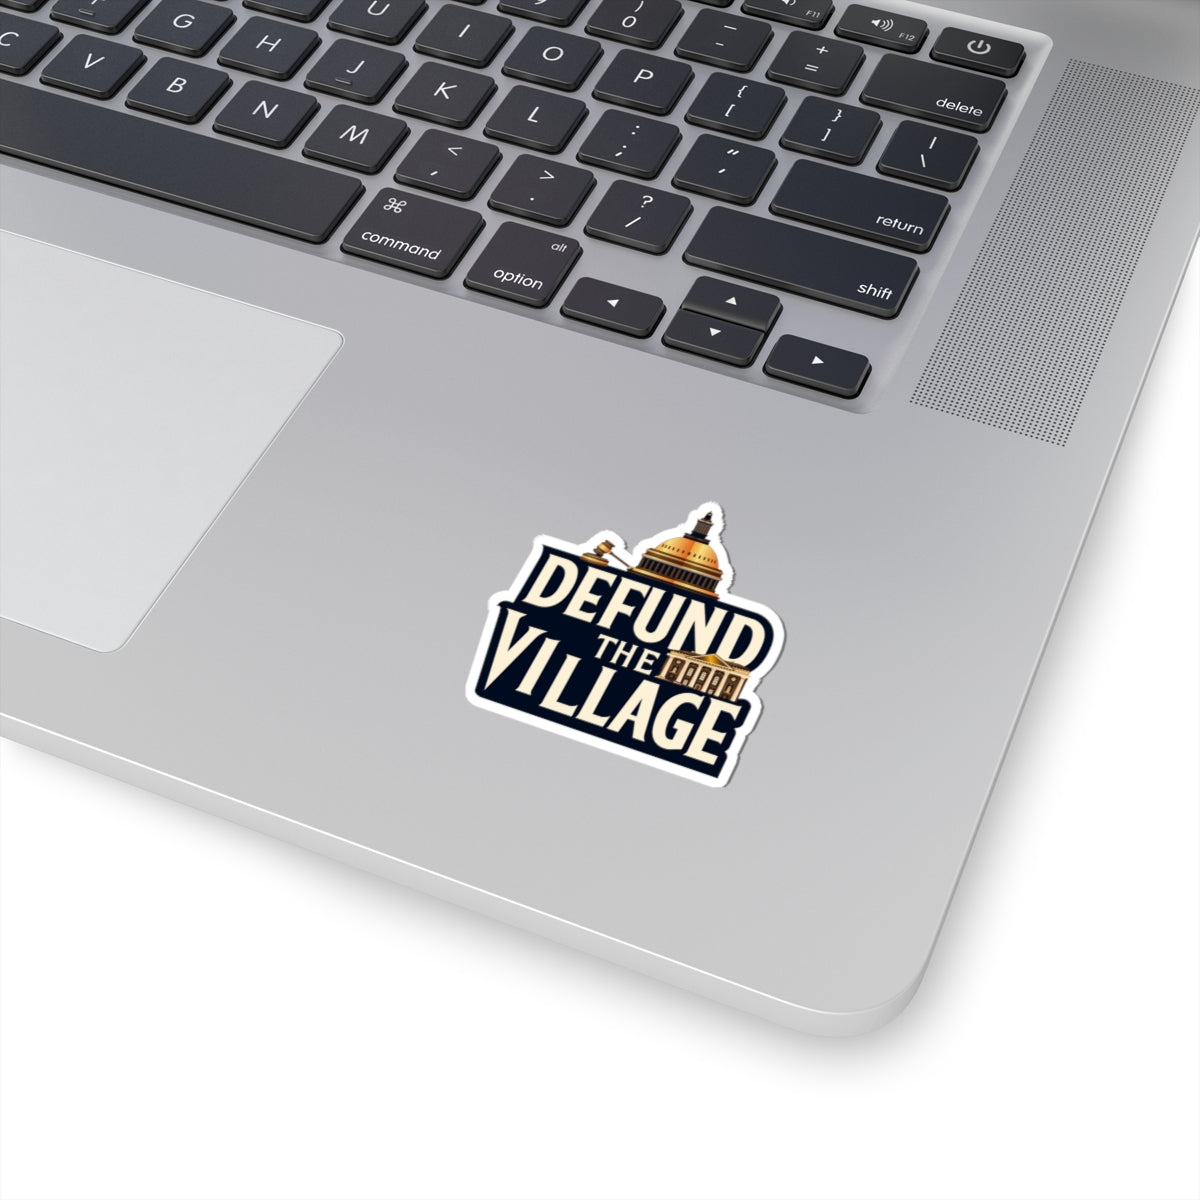 Defund The Village - Transparent Cut Stickers